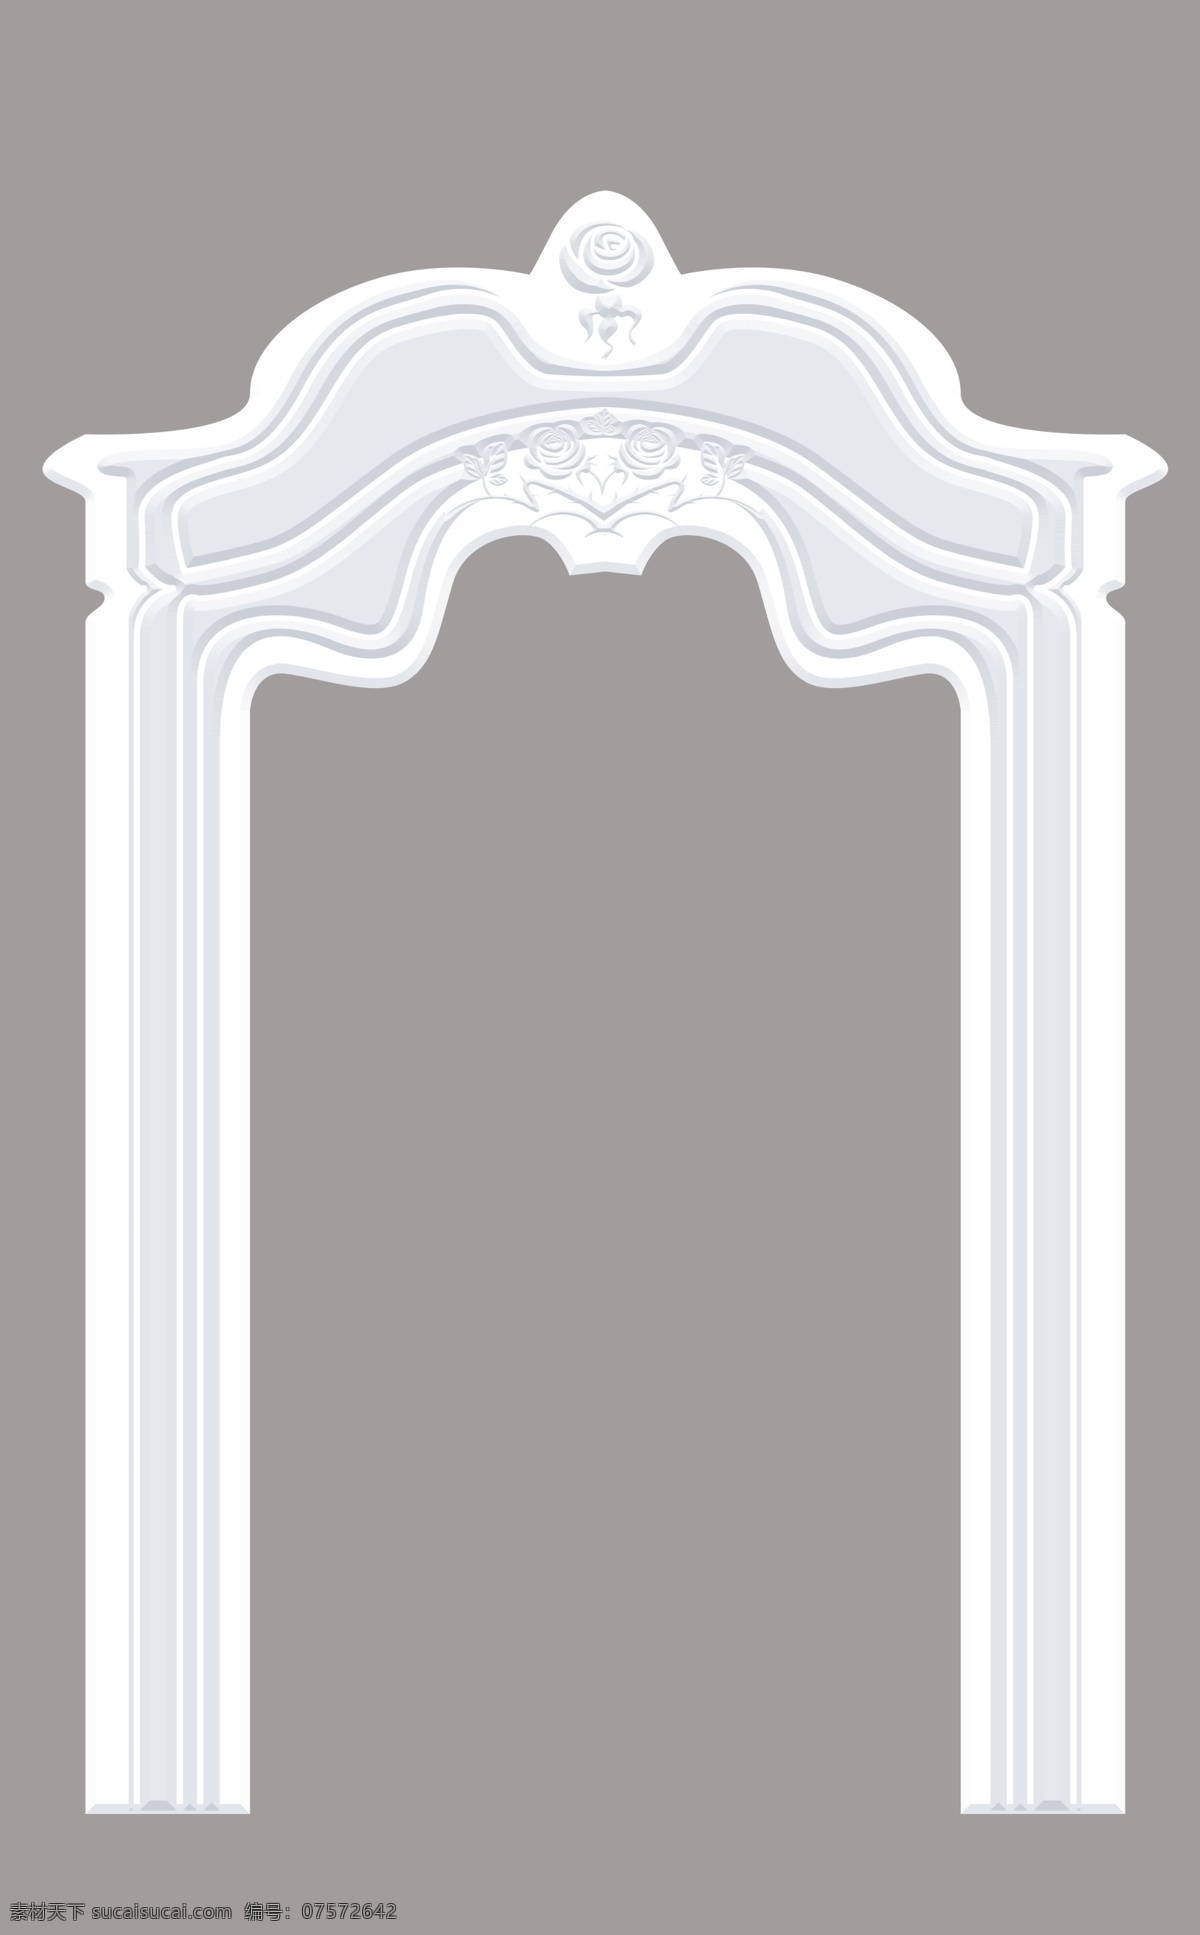 欧式 罗马柱 婚礼背景 婚礼 背景 底纹边框 边框相框